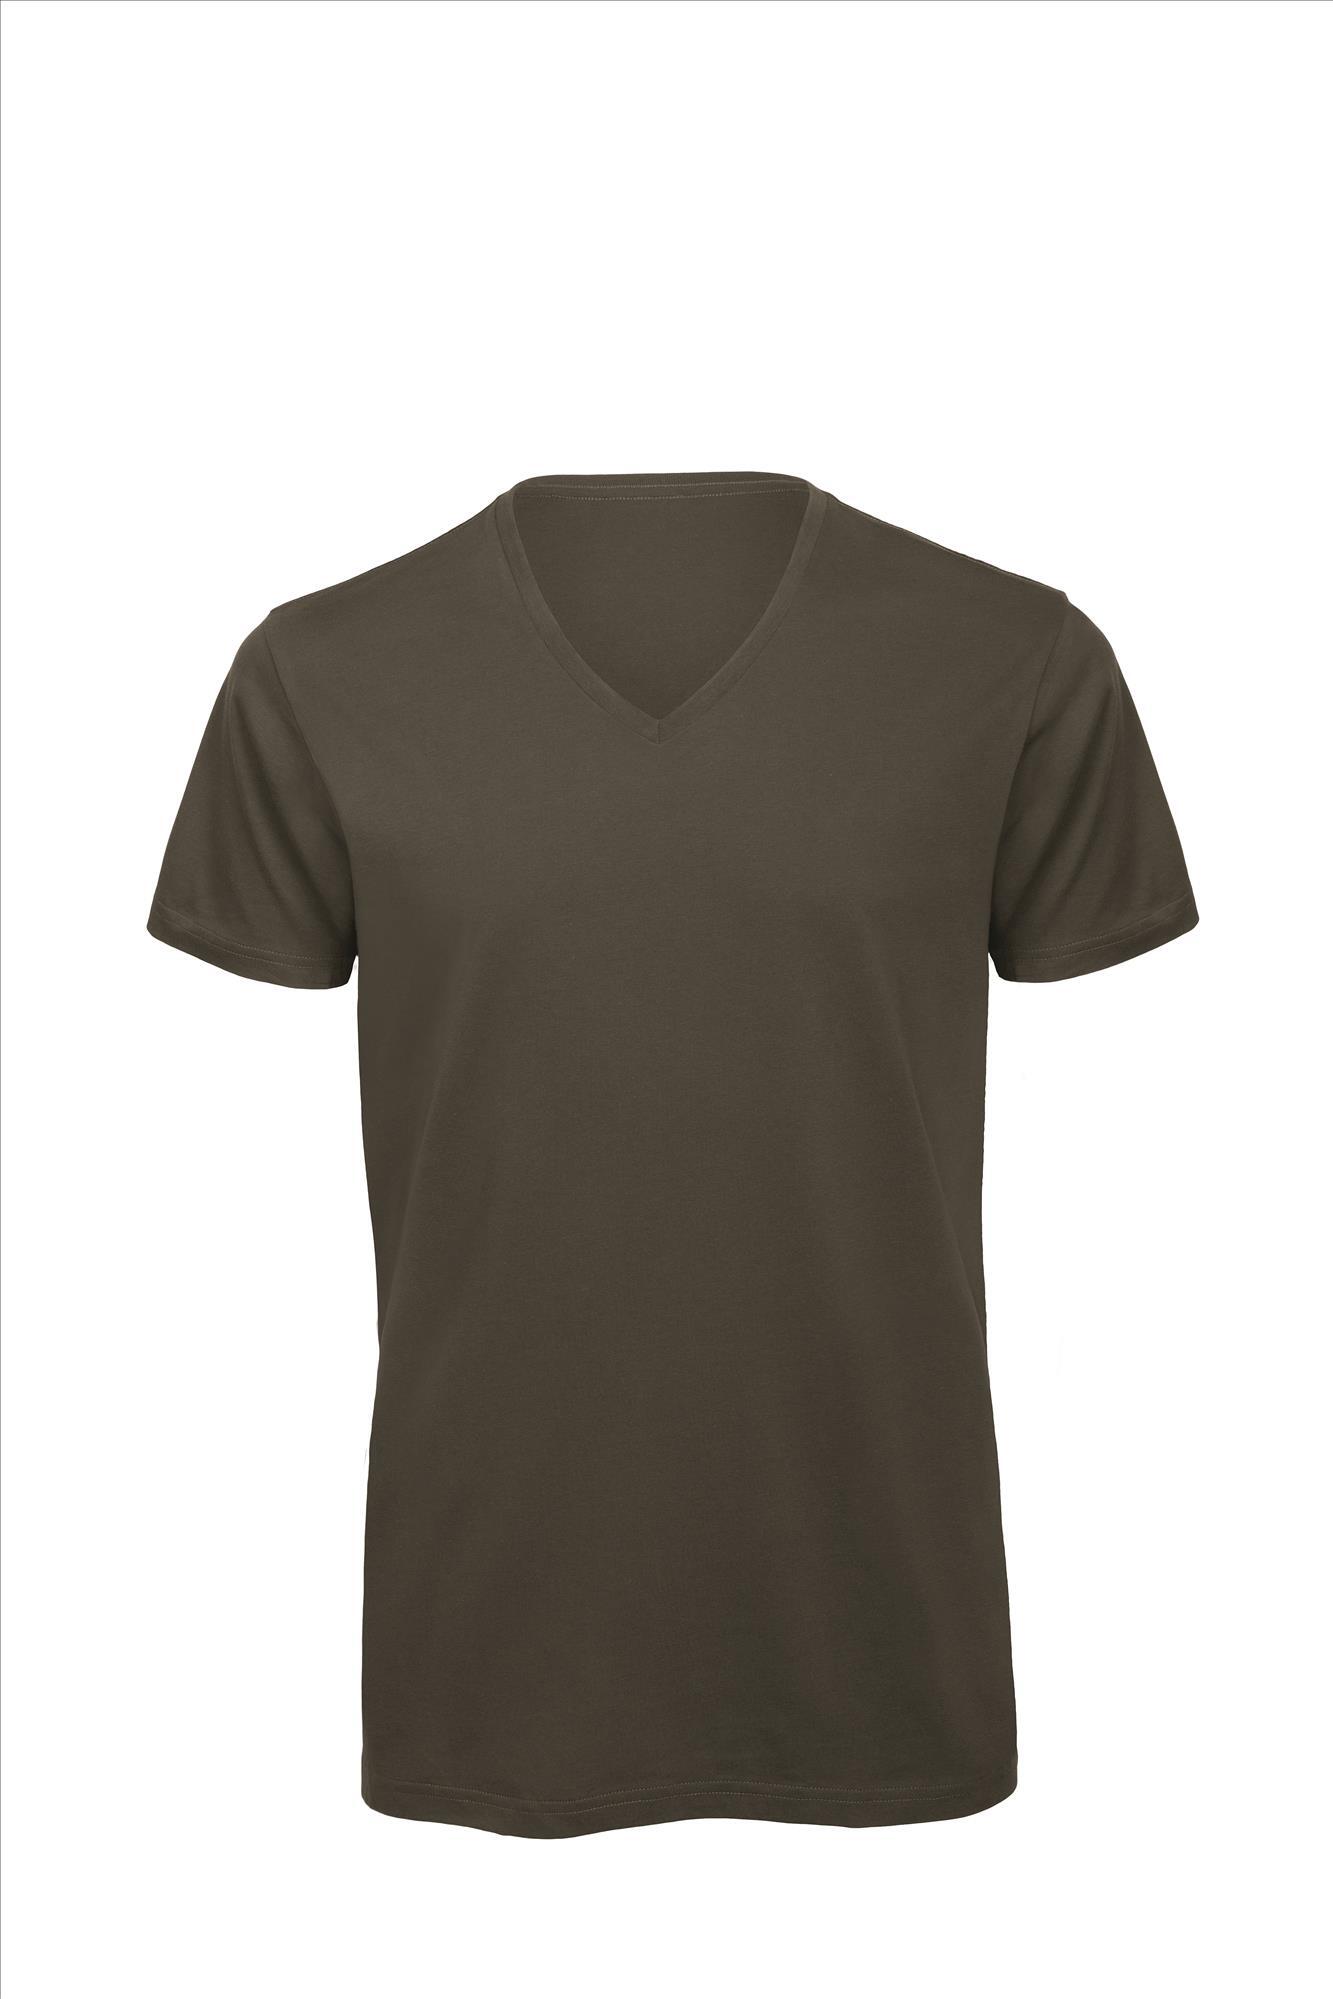 T-shirt met V-hals voor heren khaki Luxe bio kwaliteit